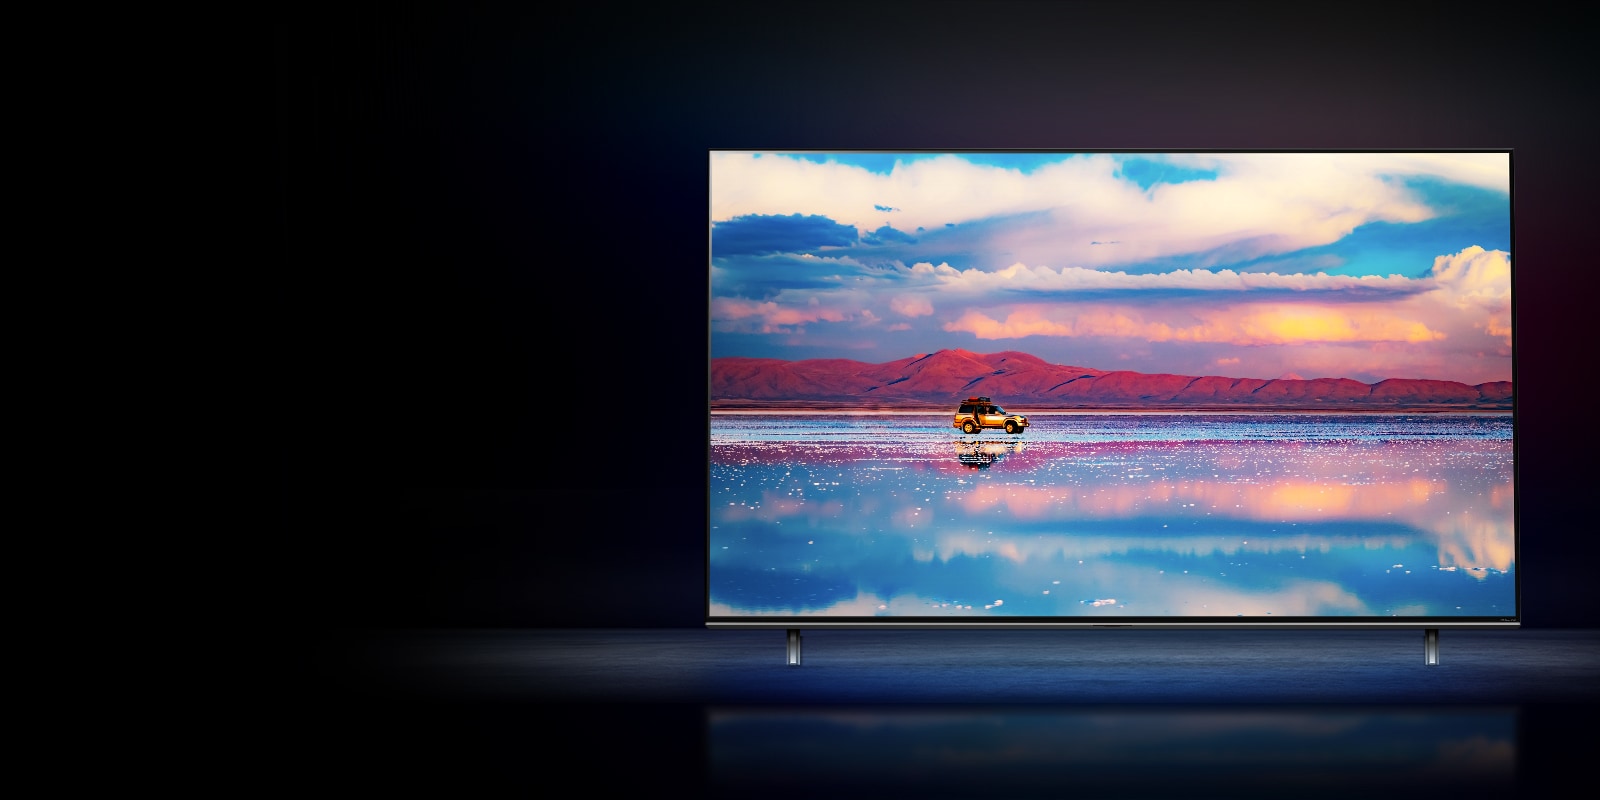 تلفاز LG NanoCell على خلفية سوداء.  يعرض التلفاز سيارة تسير أمام سلسلة جبال منخفضة في المياه التي تعكس السماء المفعمة بالحيوية. 